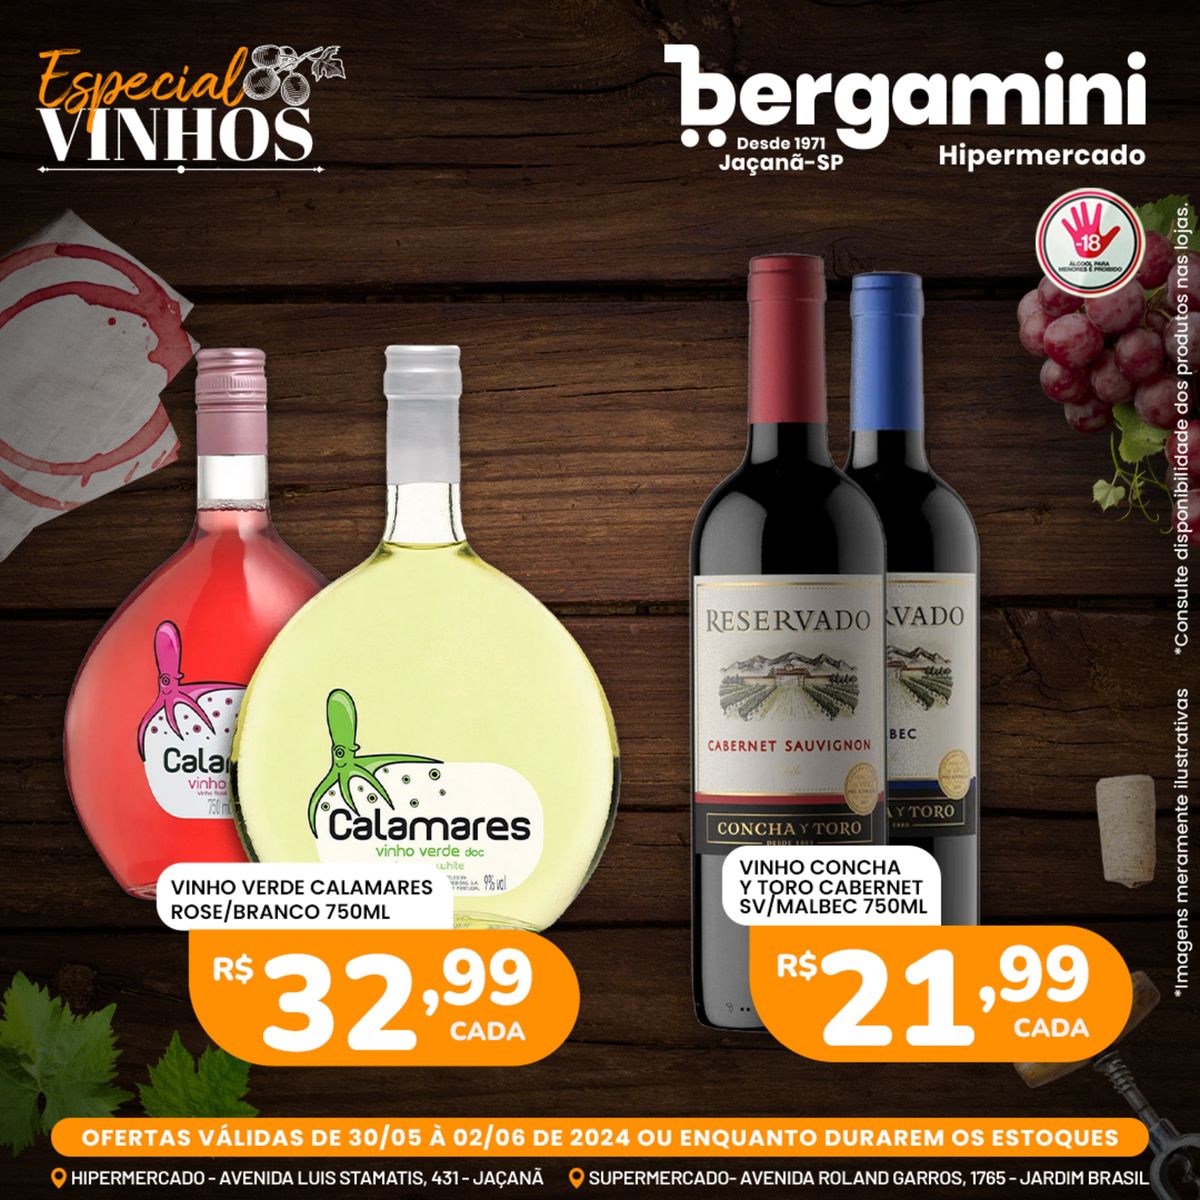 Vinhos Cabernet Sauvignon e Vinho Verde Calamares em promoção!